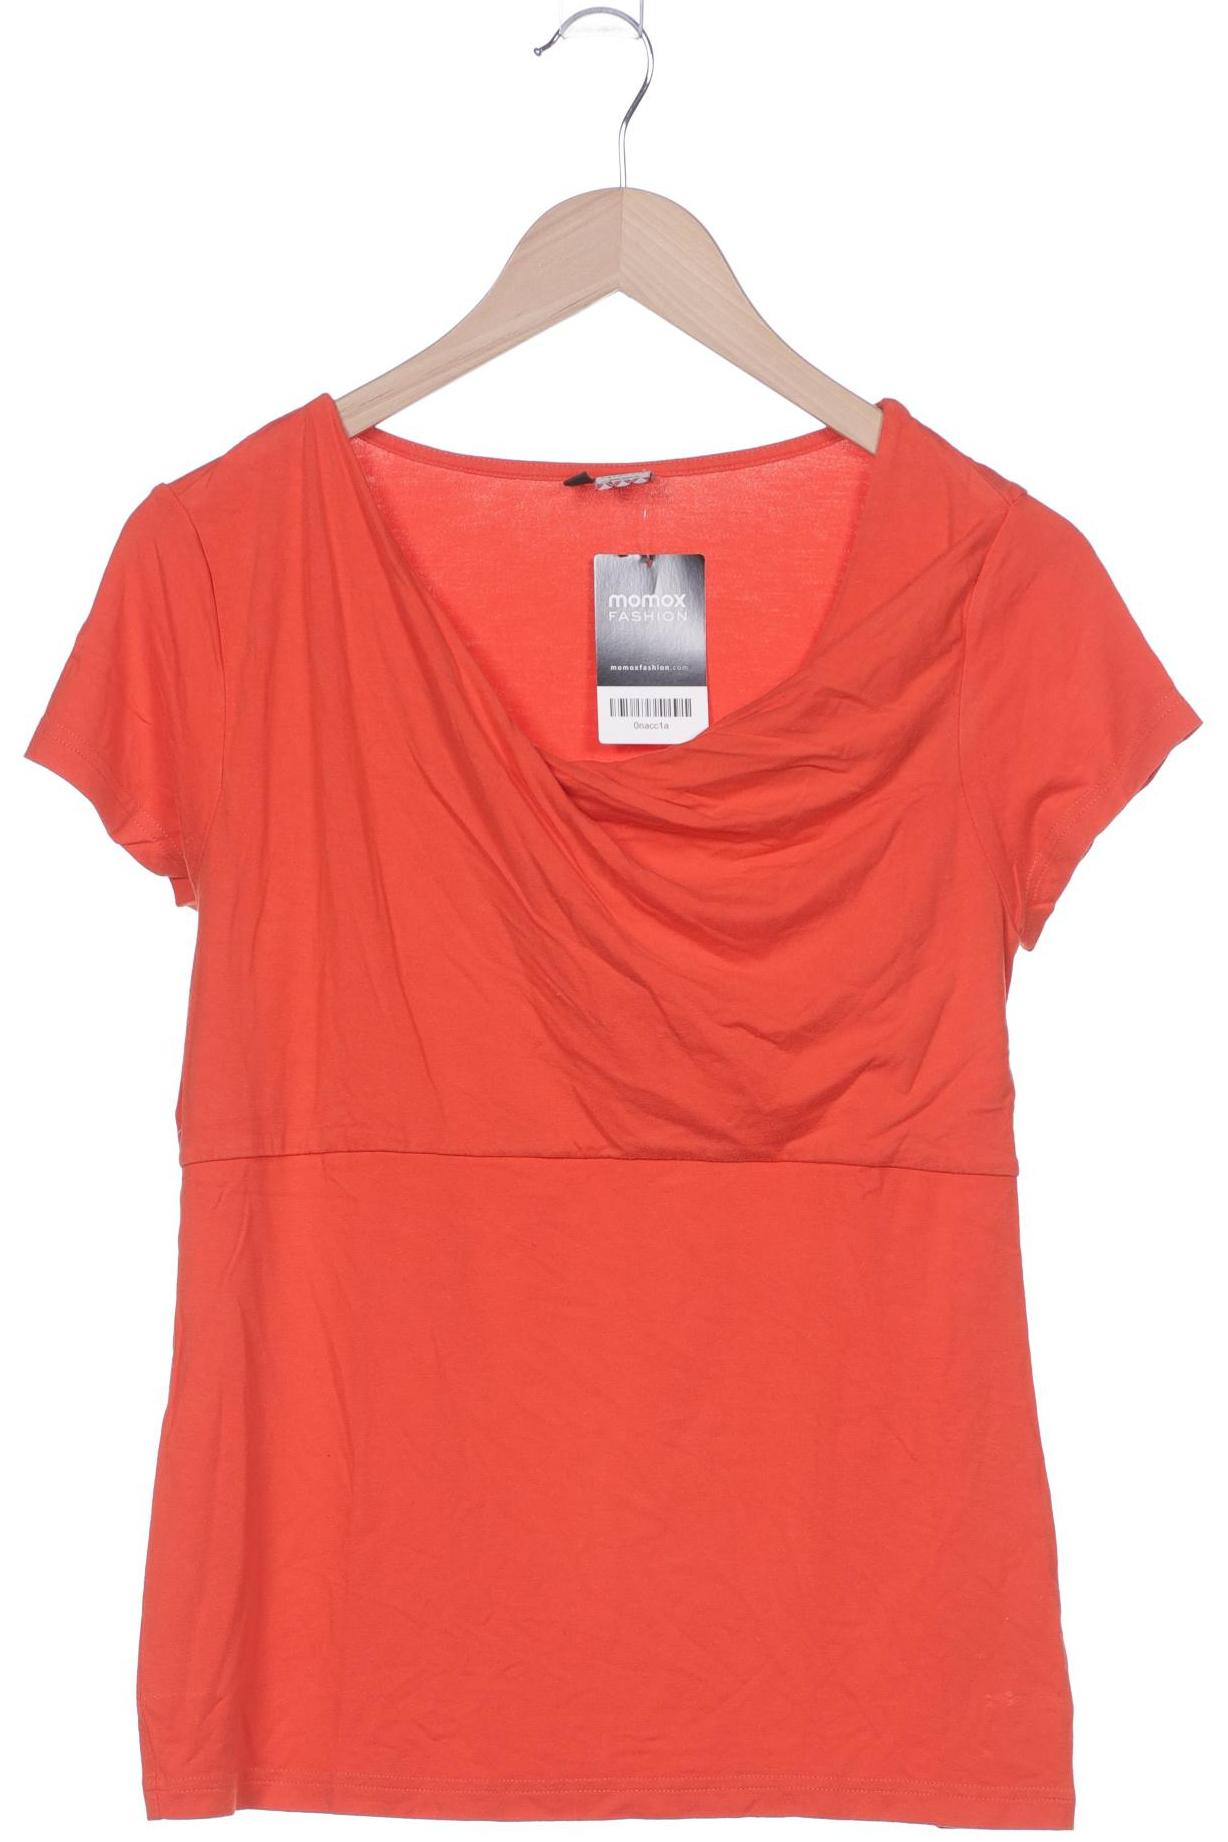 Qiero Damen T-Shirt, orange, Gr. 40 von Qiero